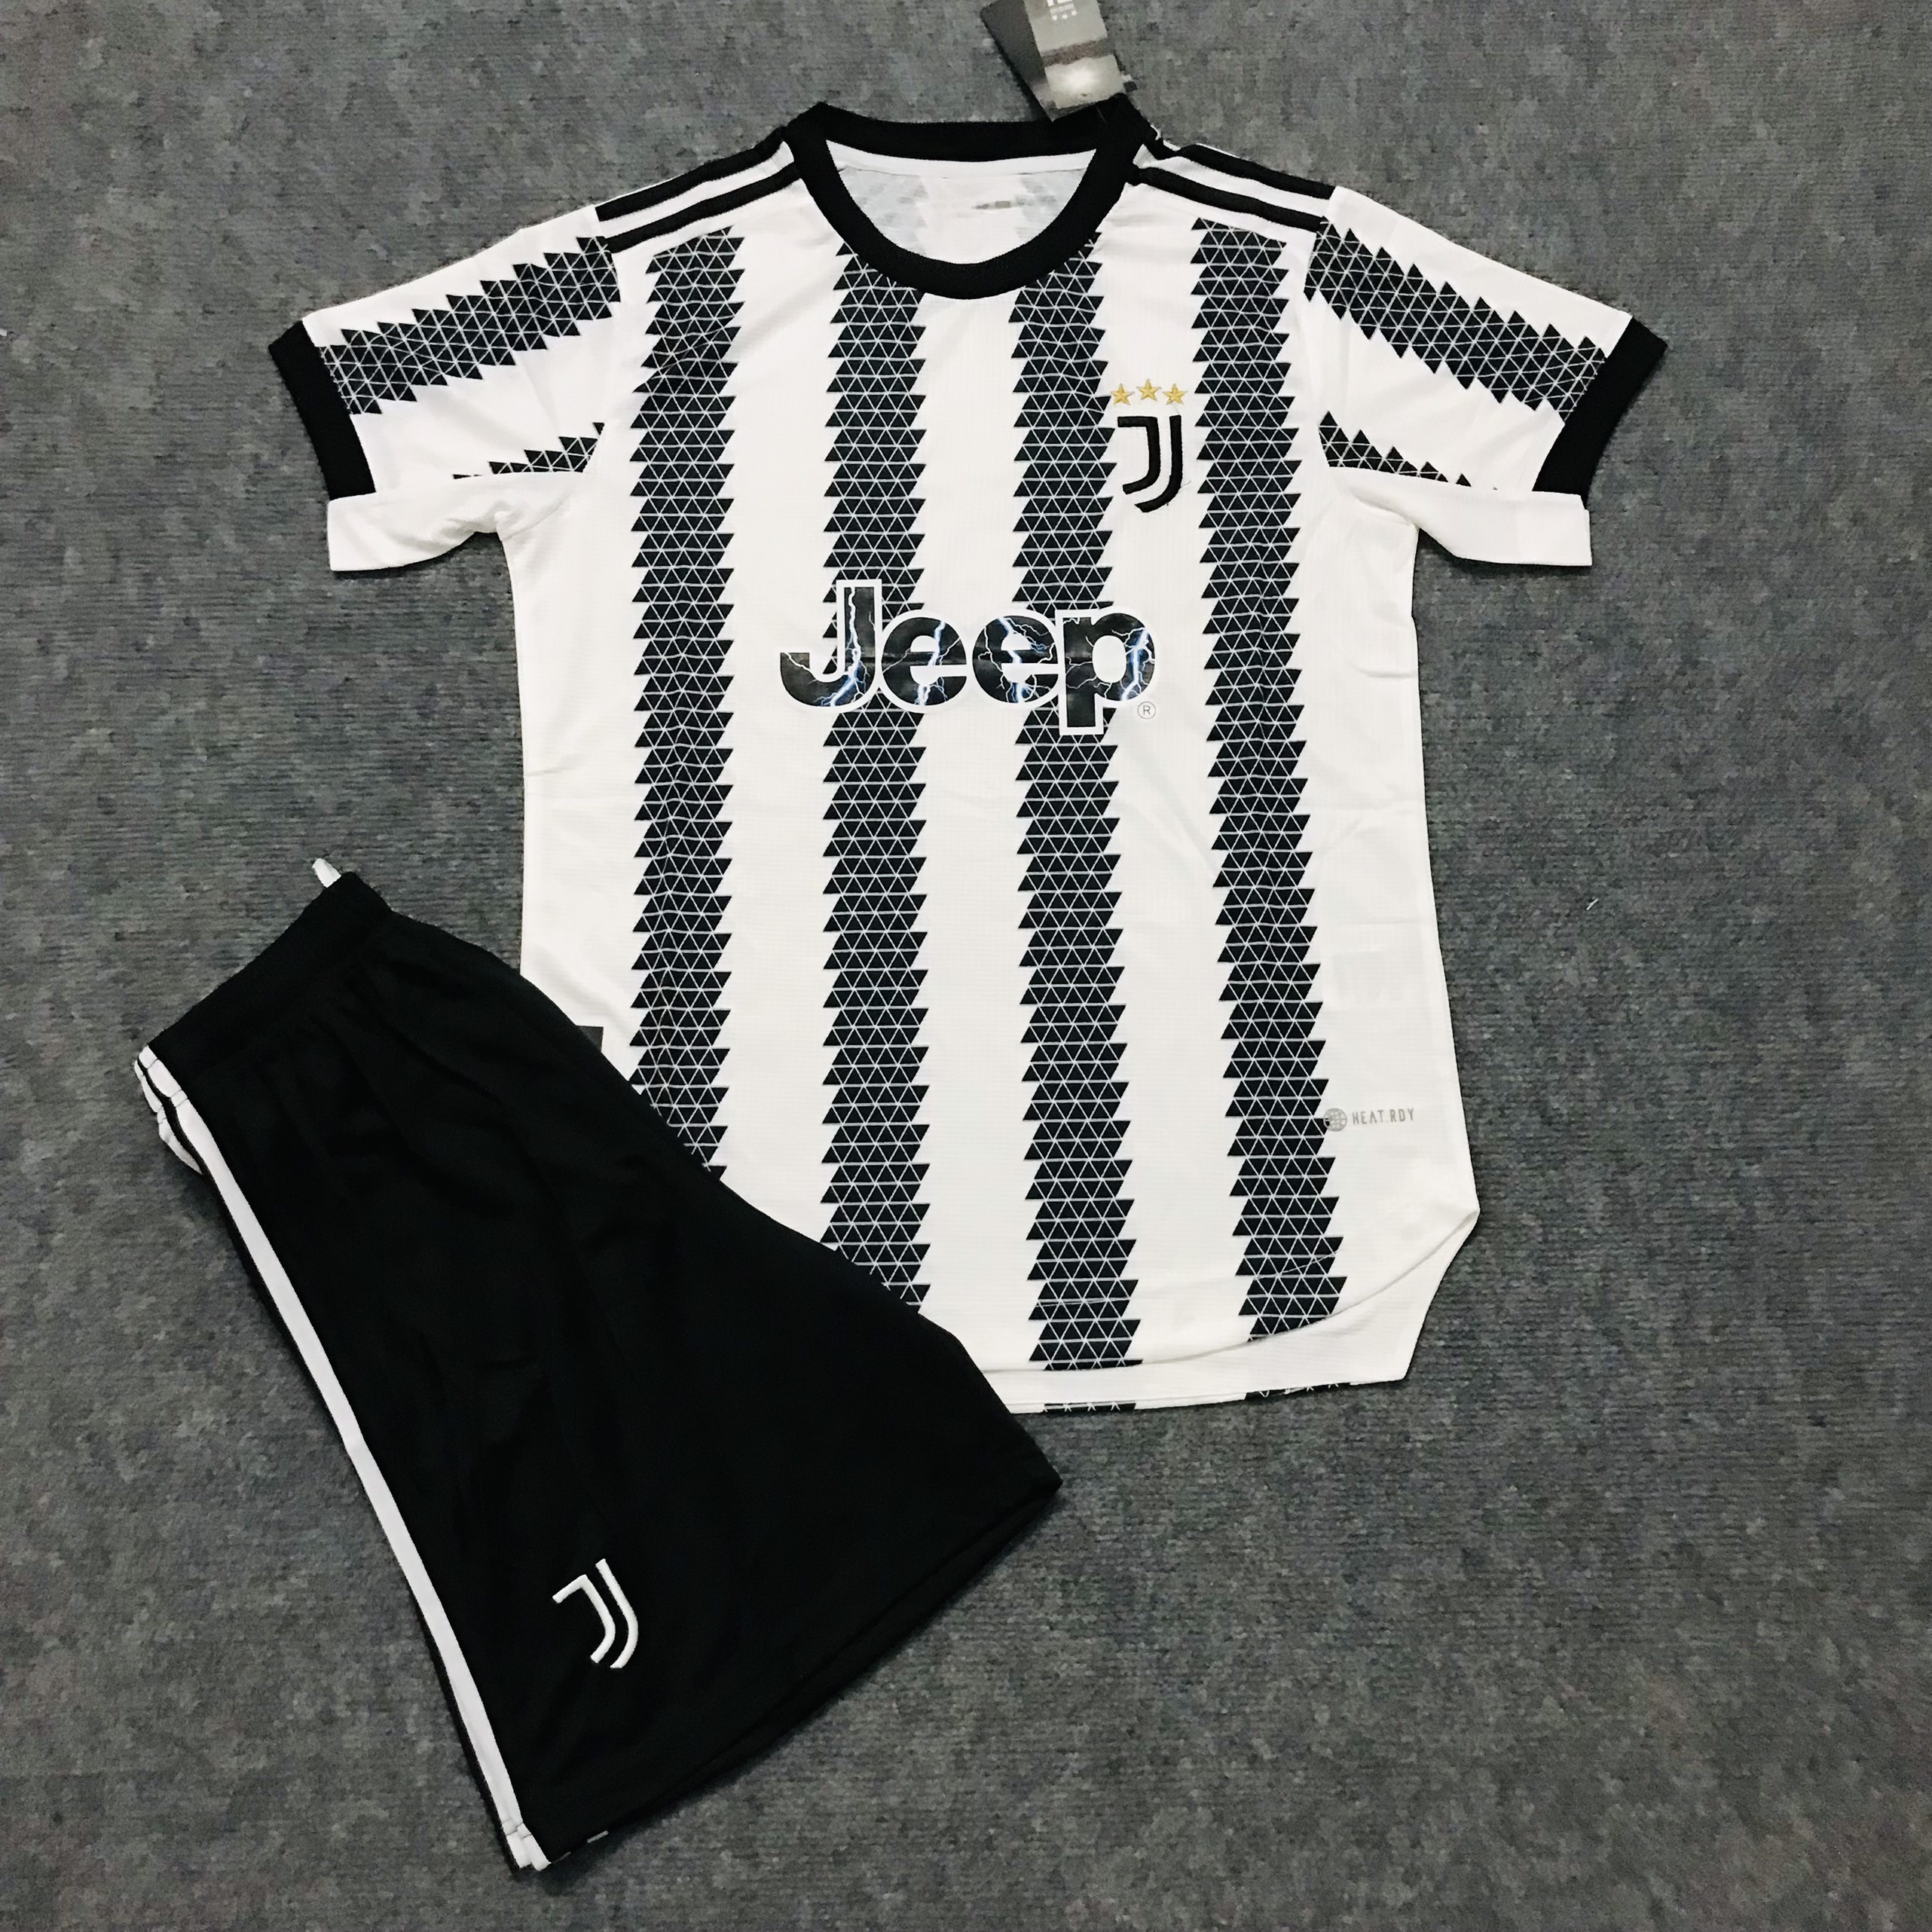 Bộ quần áo đá bóng Fake thái cao cấp CLB Juventus